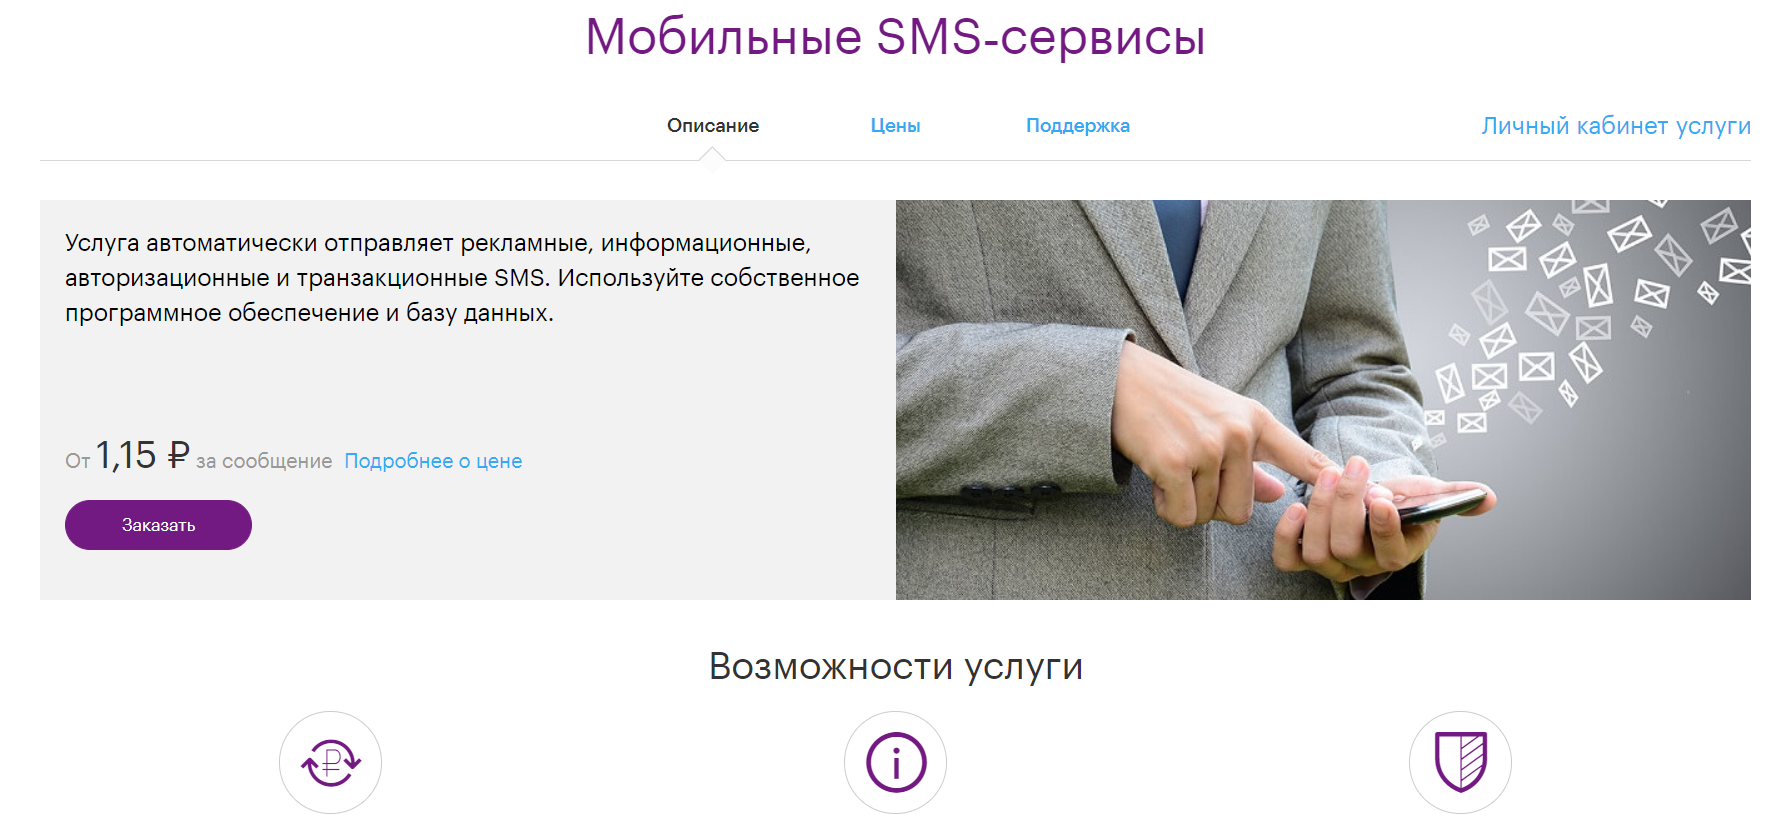 Лендинг сервиса SMS-рассылок для бизнеса от Мегафон.